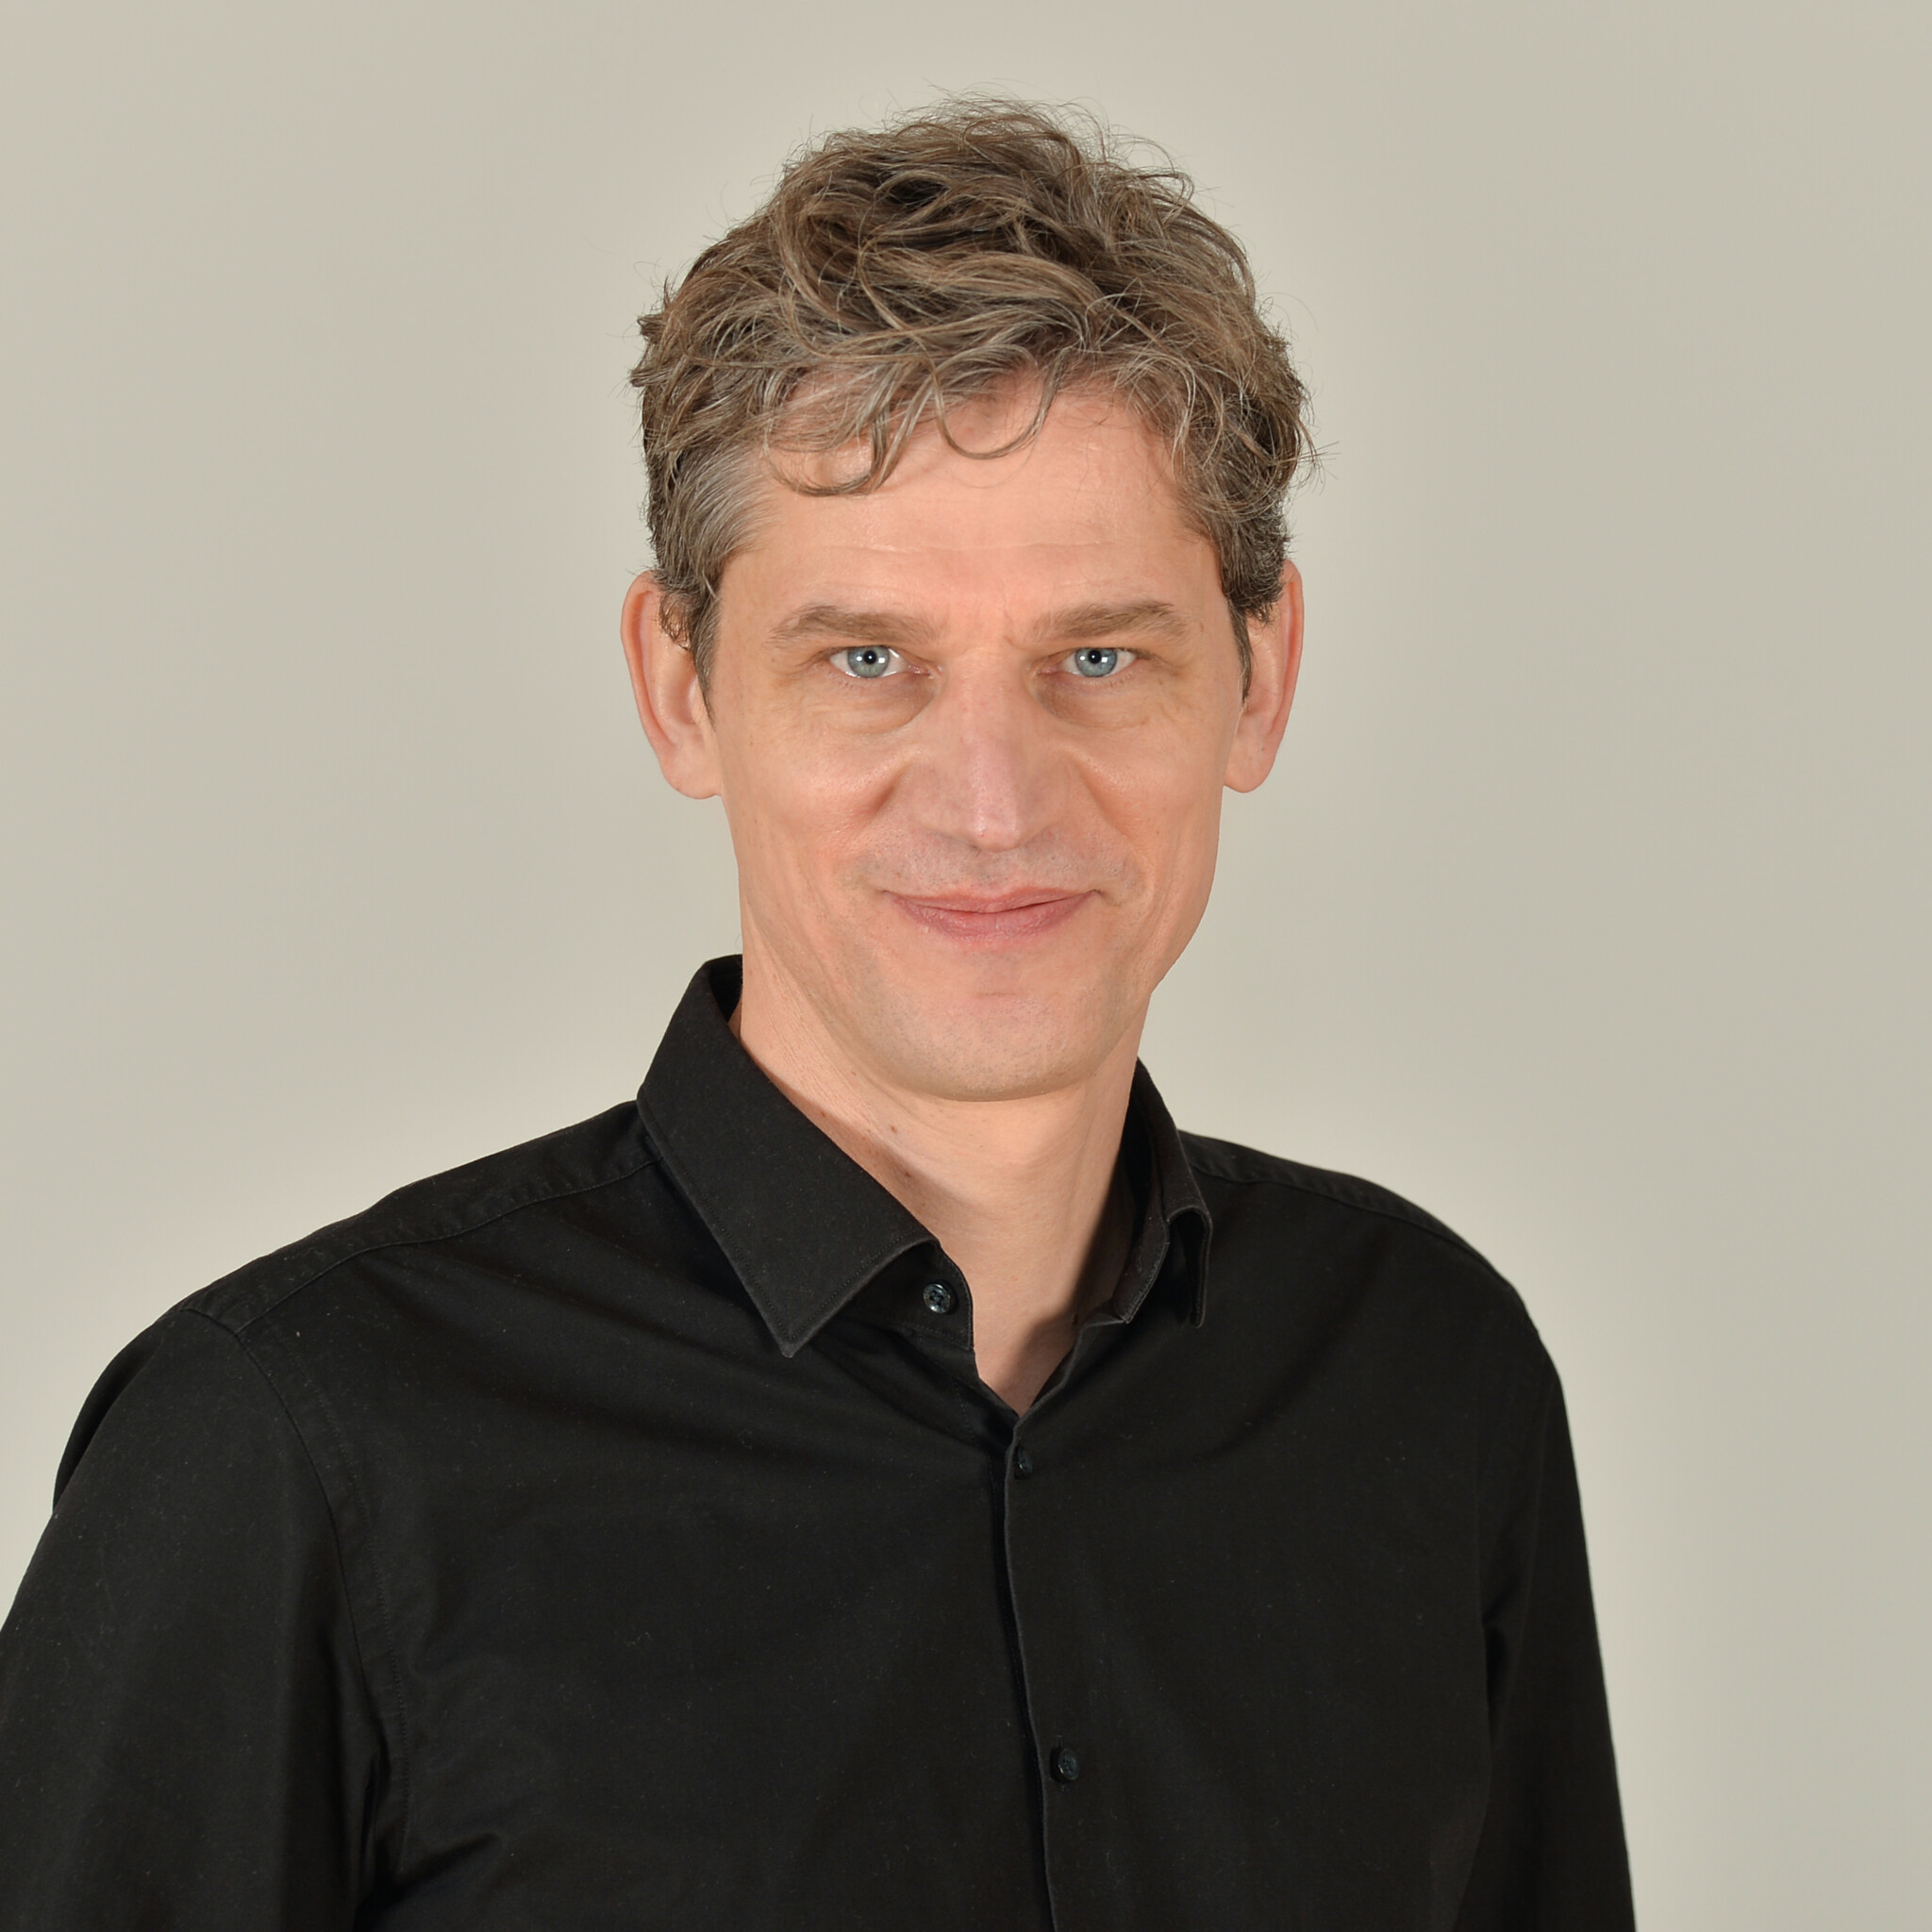 Portrait von Stefan Hahn in schwarzem Hemd